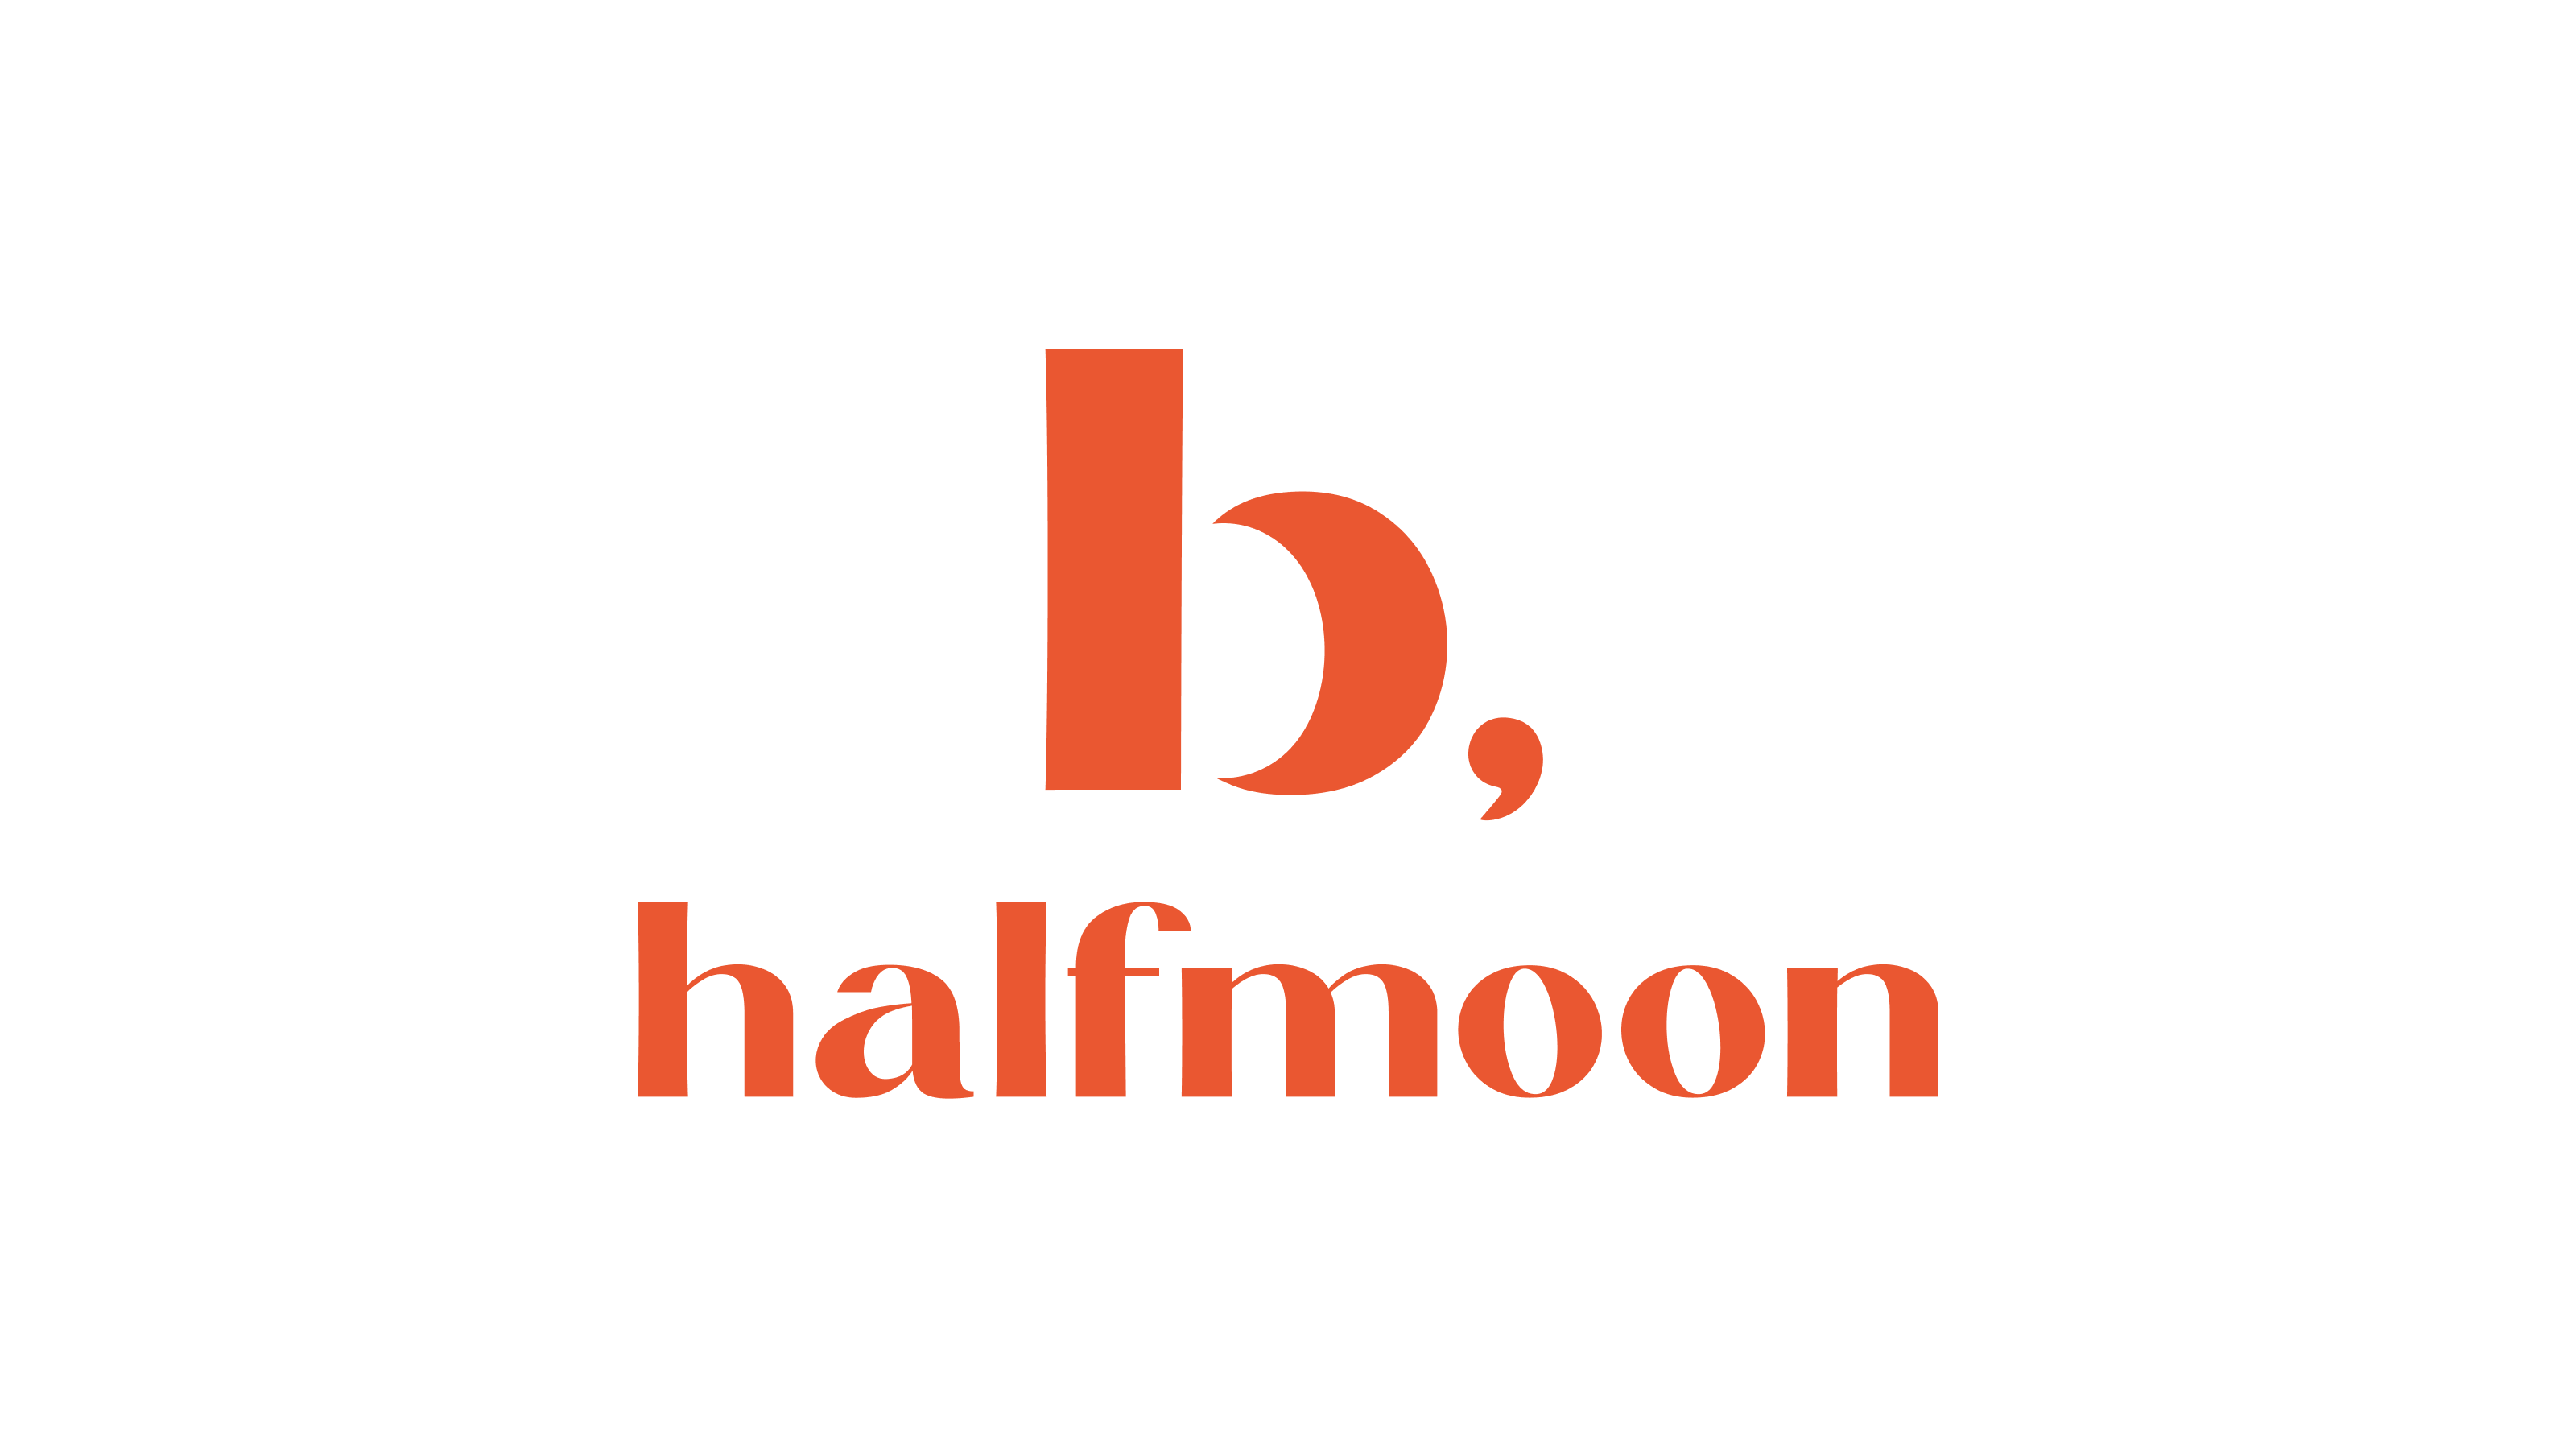 b, halfmoon